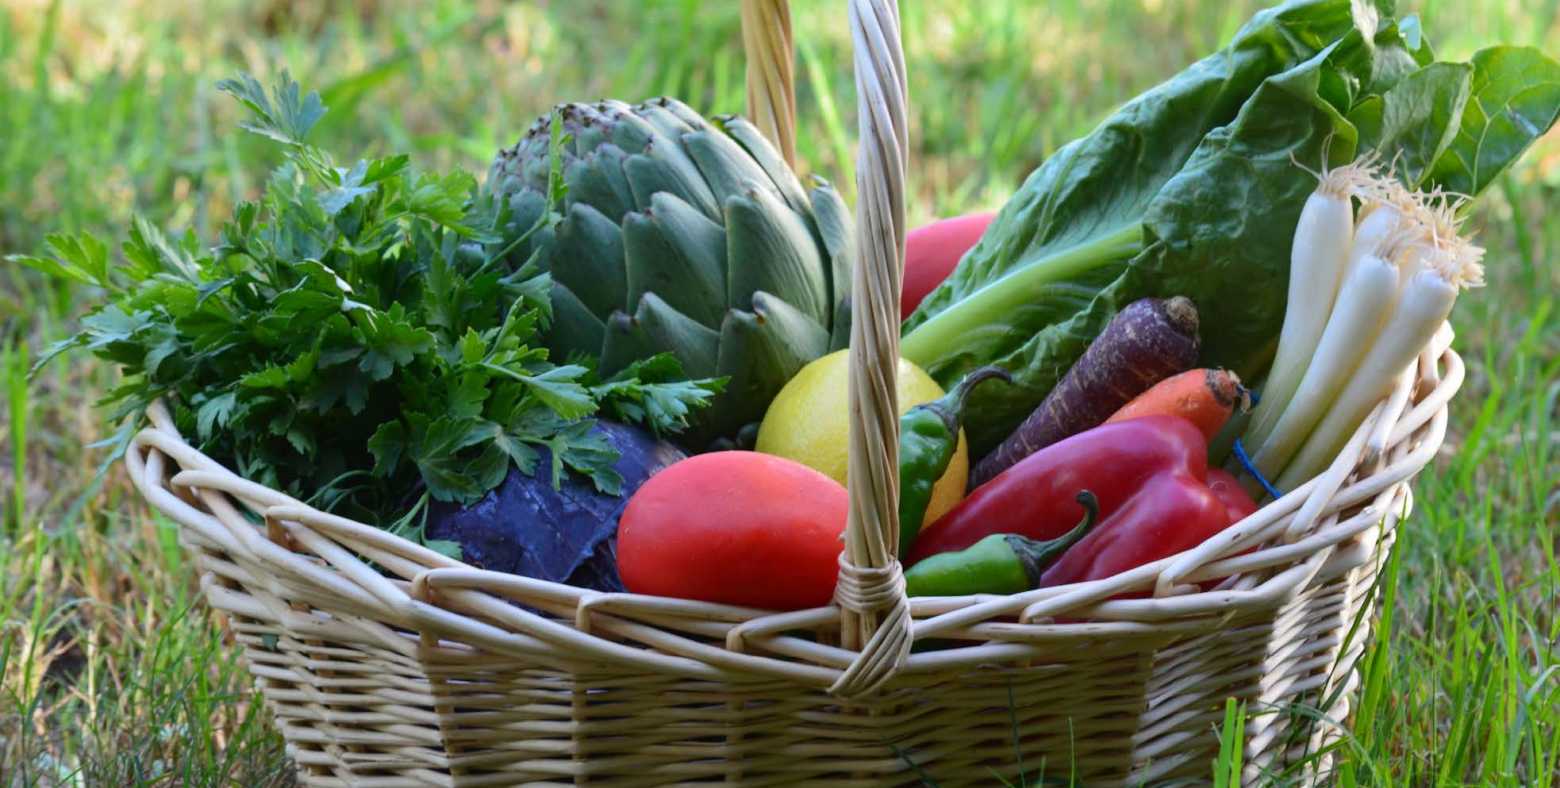 basket of colorful vegetables